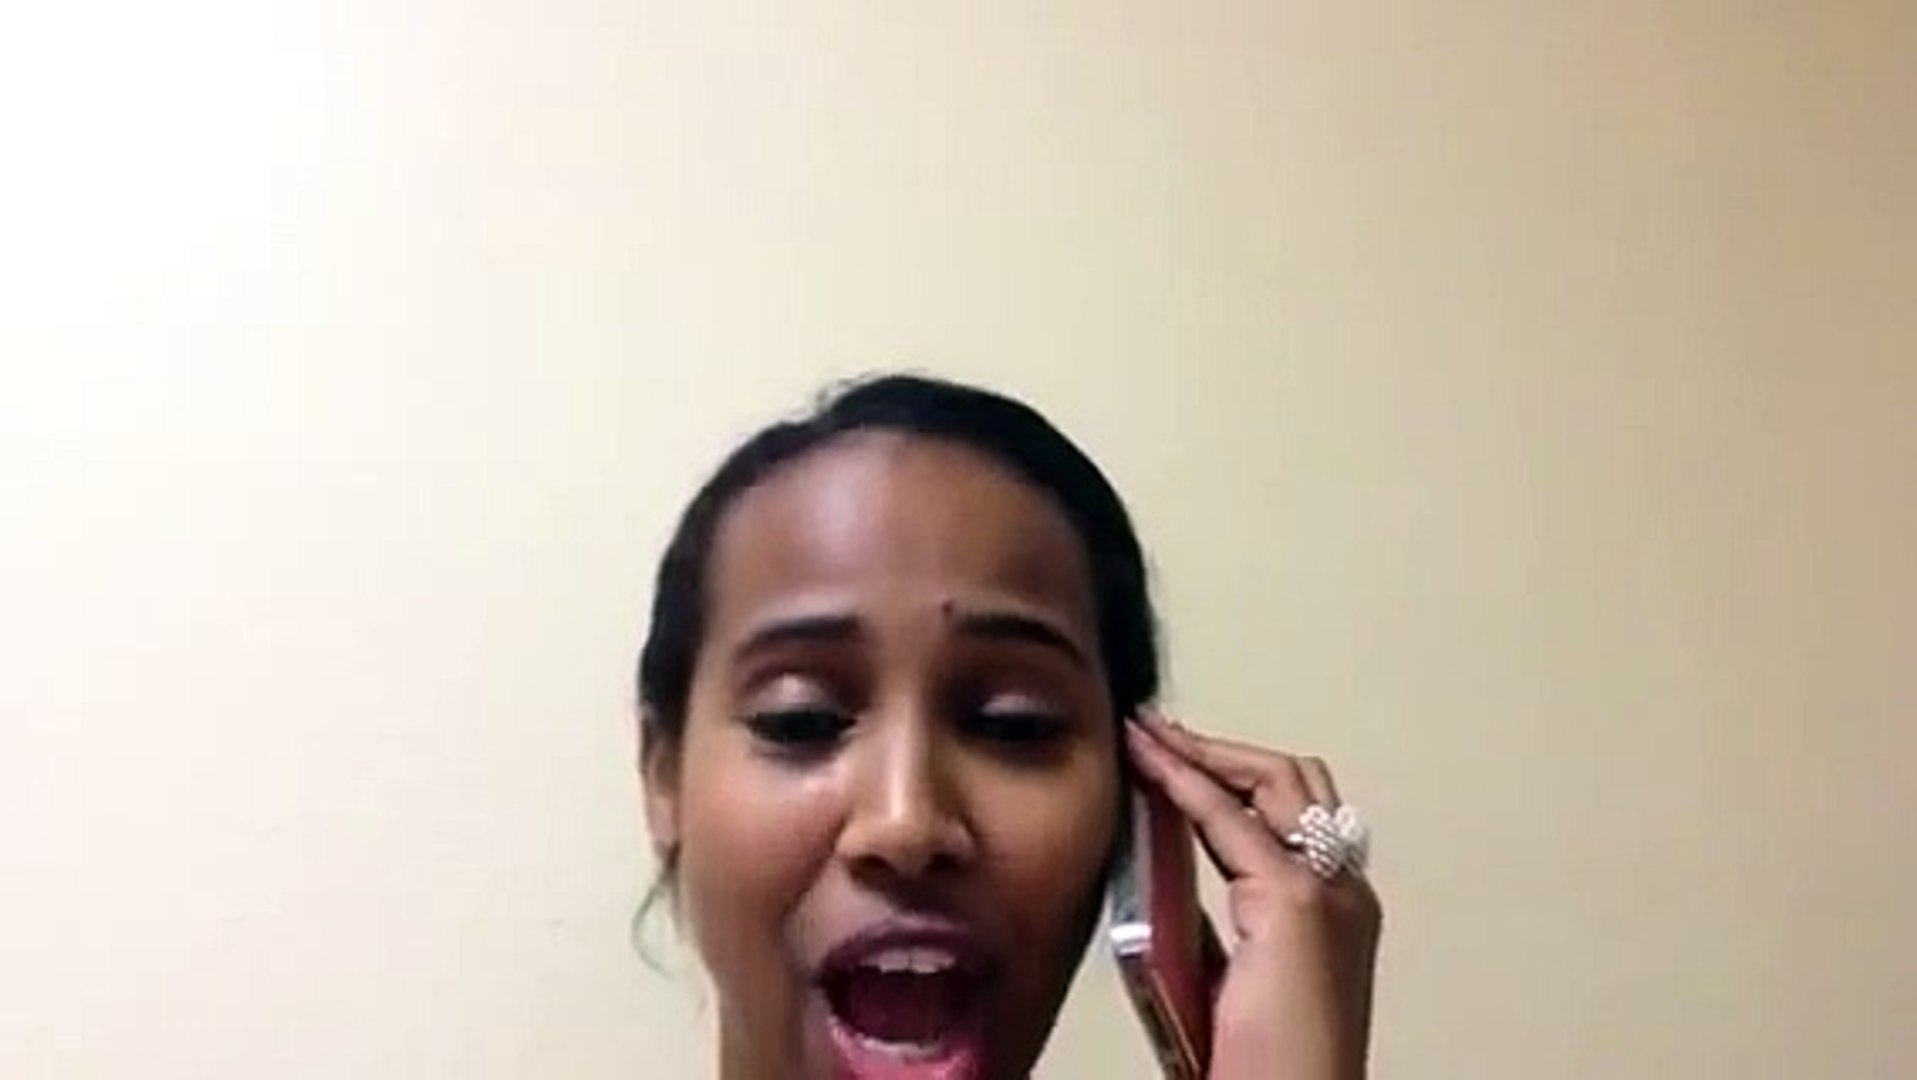 Somali girls pretty